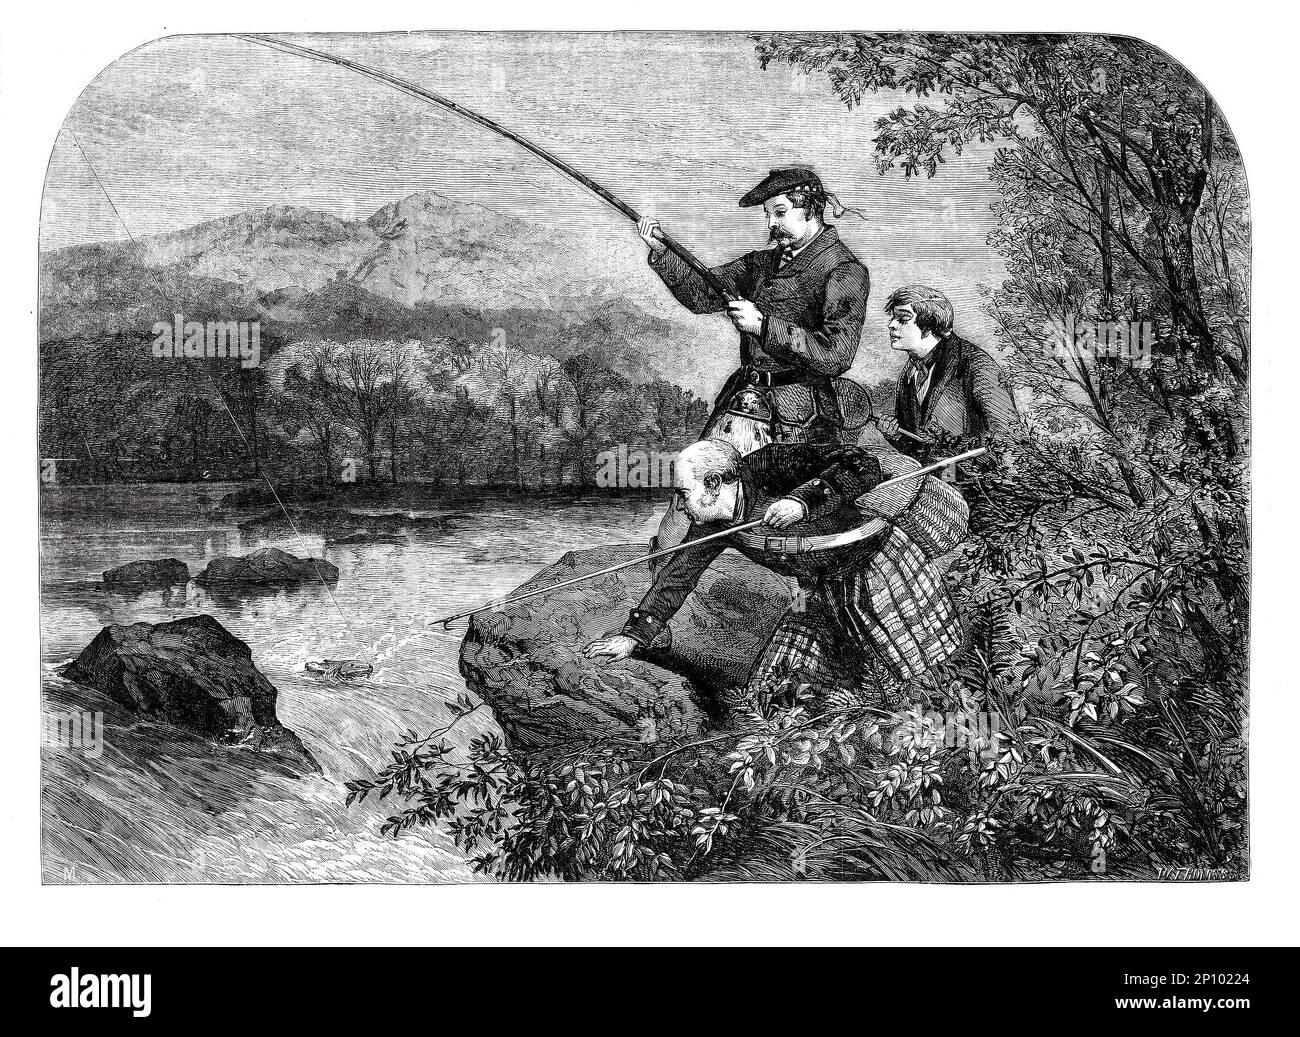 Kilted Scottish Anglers Fishing for Salmon in the Highlands par M S Morgan en 1860. L’Écosse est renommée pour le saumon atlantique, Salmo salar, qui part des aires d’alimentation marines de l’Atlantique Nord jusqu’aux rivières de l’Écosse et en amont de janvier à novembre pour atteindre les frayères à la fin de l’automne. Banque D'Images